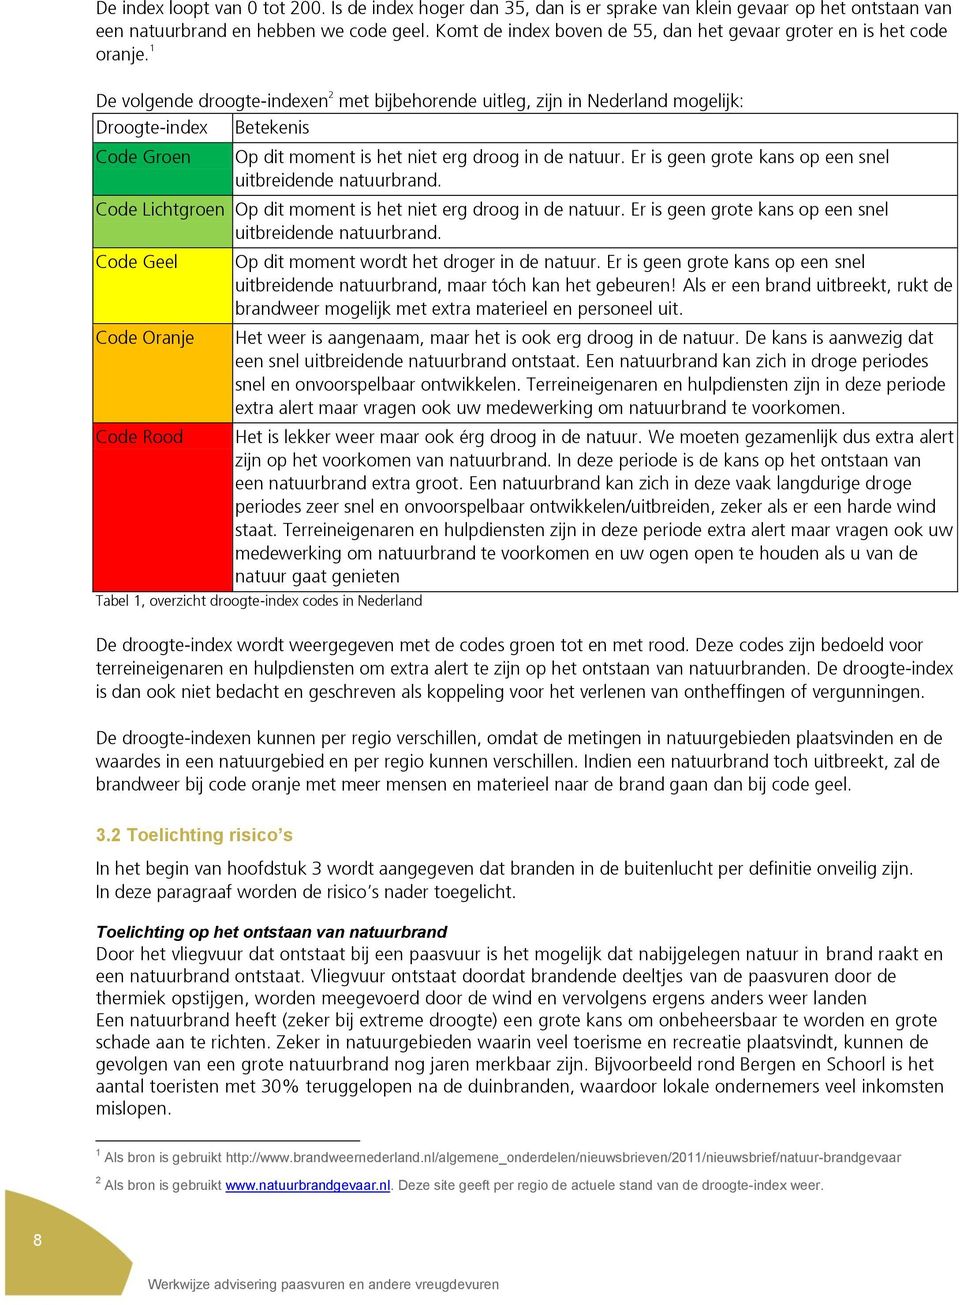 1 De volgende droogte-indexen 2 met bijbehorende uitleg, zijn in Nederland mogelijk: Droogte-index Code Groen Betekenis Op dit moment is het niet erg droog in de natuur.